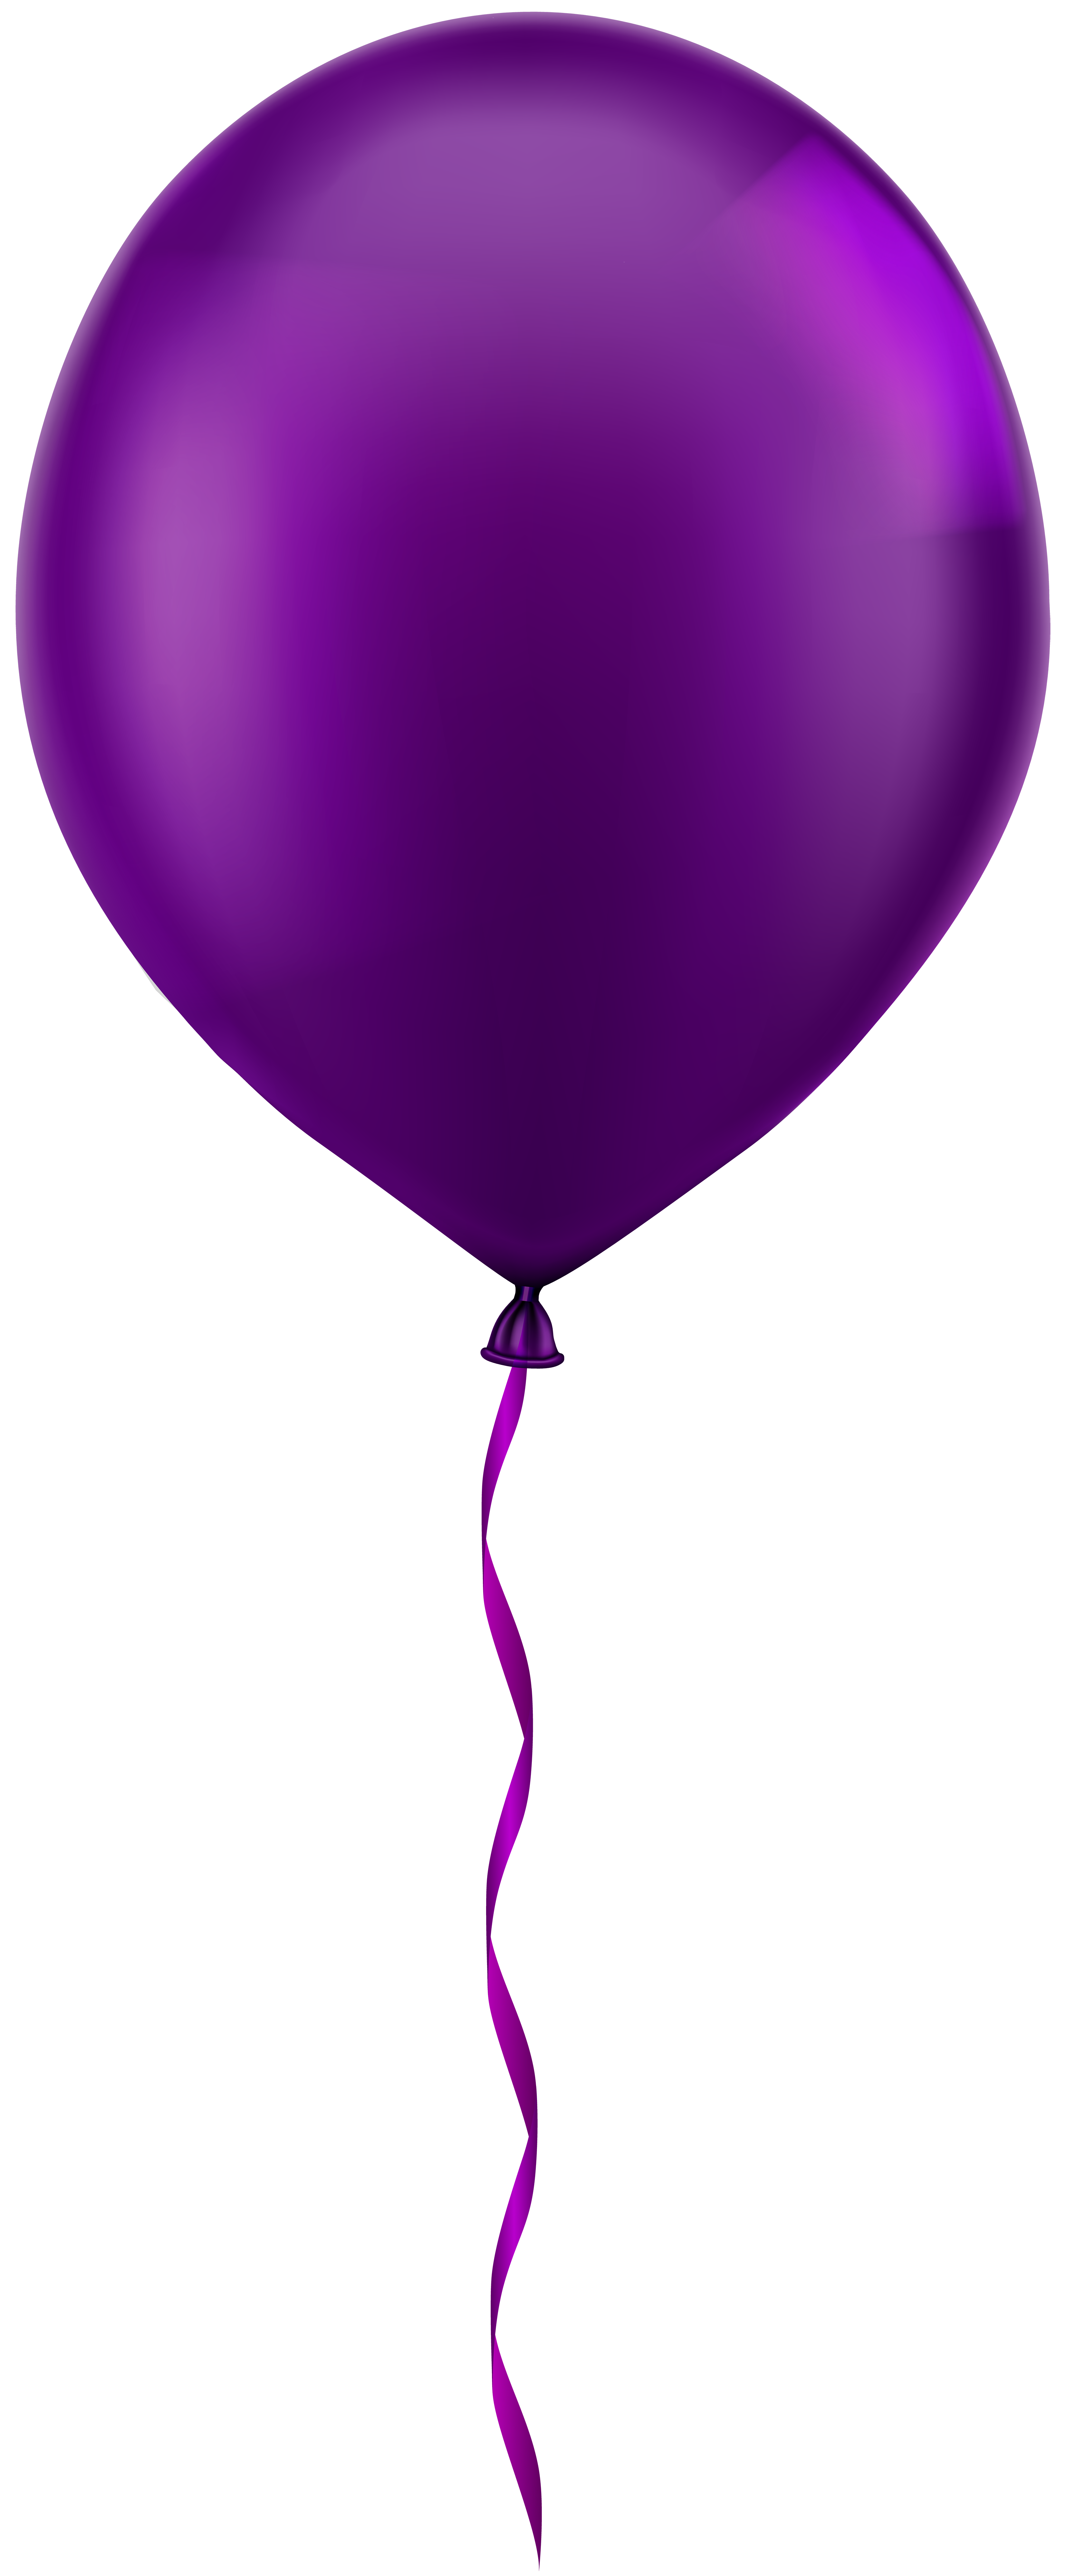 Single purple balloon.